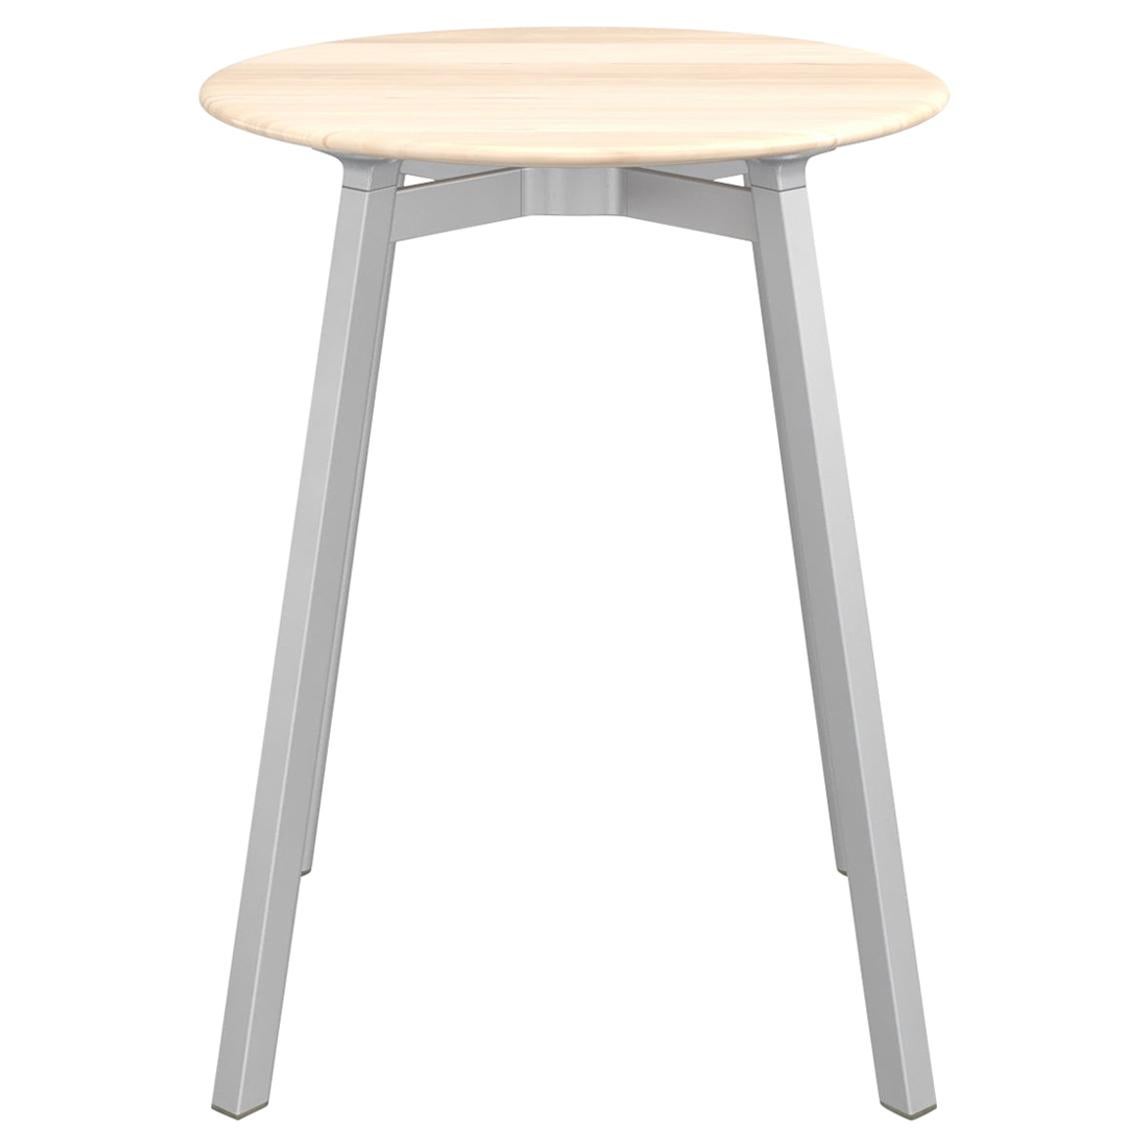 Petite table basse ronde Emeco Su avec cadre en aluminium anodisé et plateau en bois par Nendo